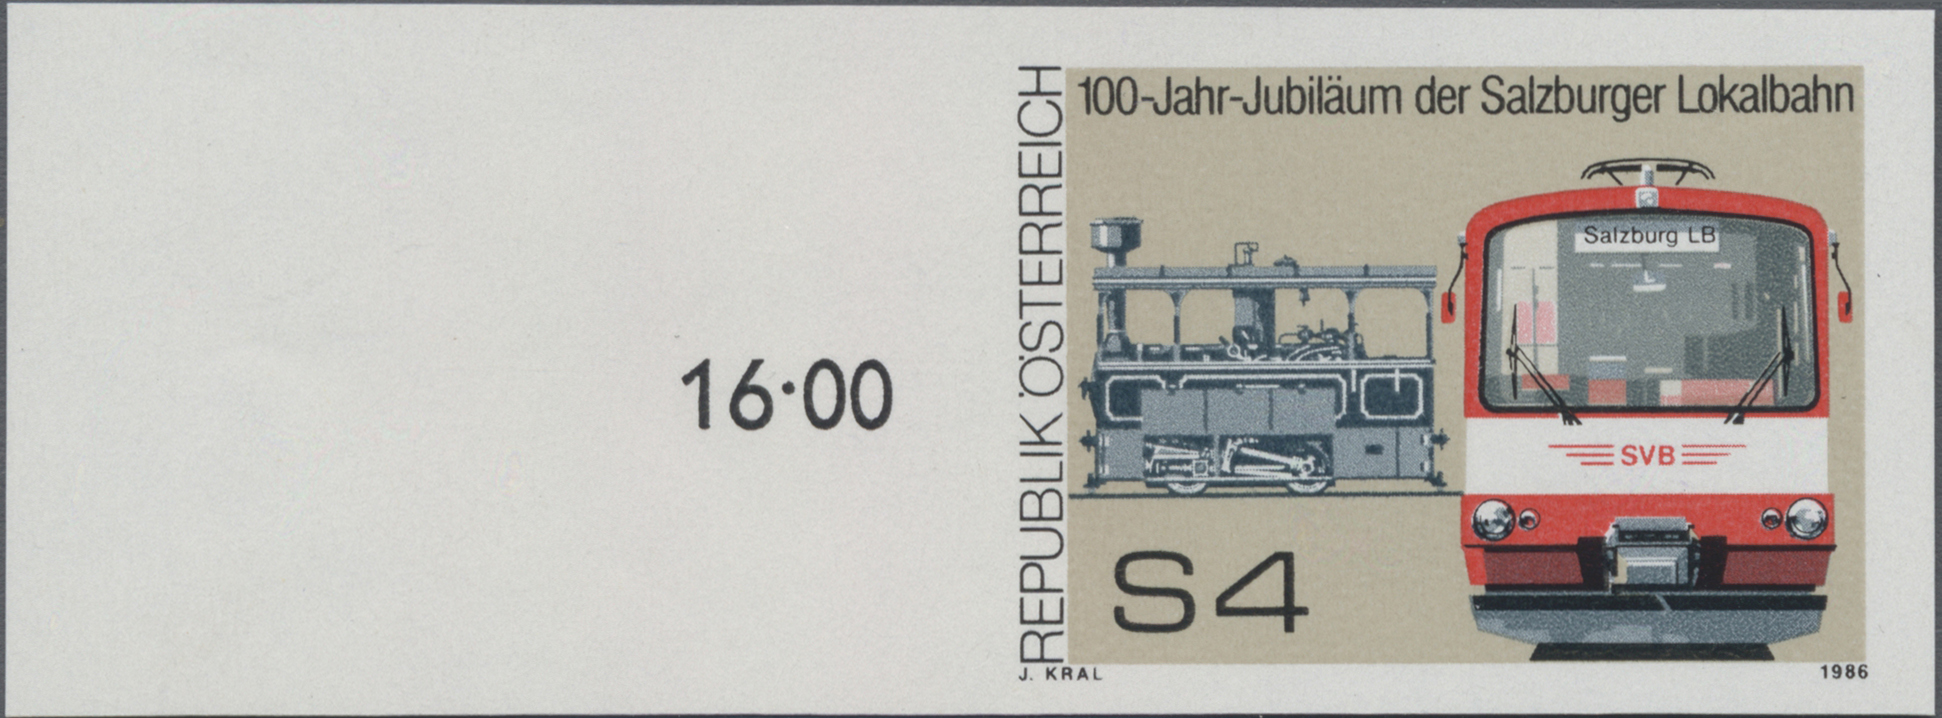 1986, 4 S, 100 Jahre Salzburger Lokalbahn, Abbildung: Dampftramwaylok (1886) und Gelenktriebwagen (1986)